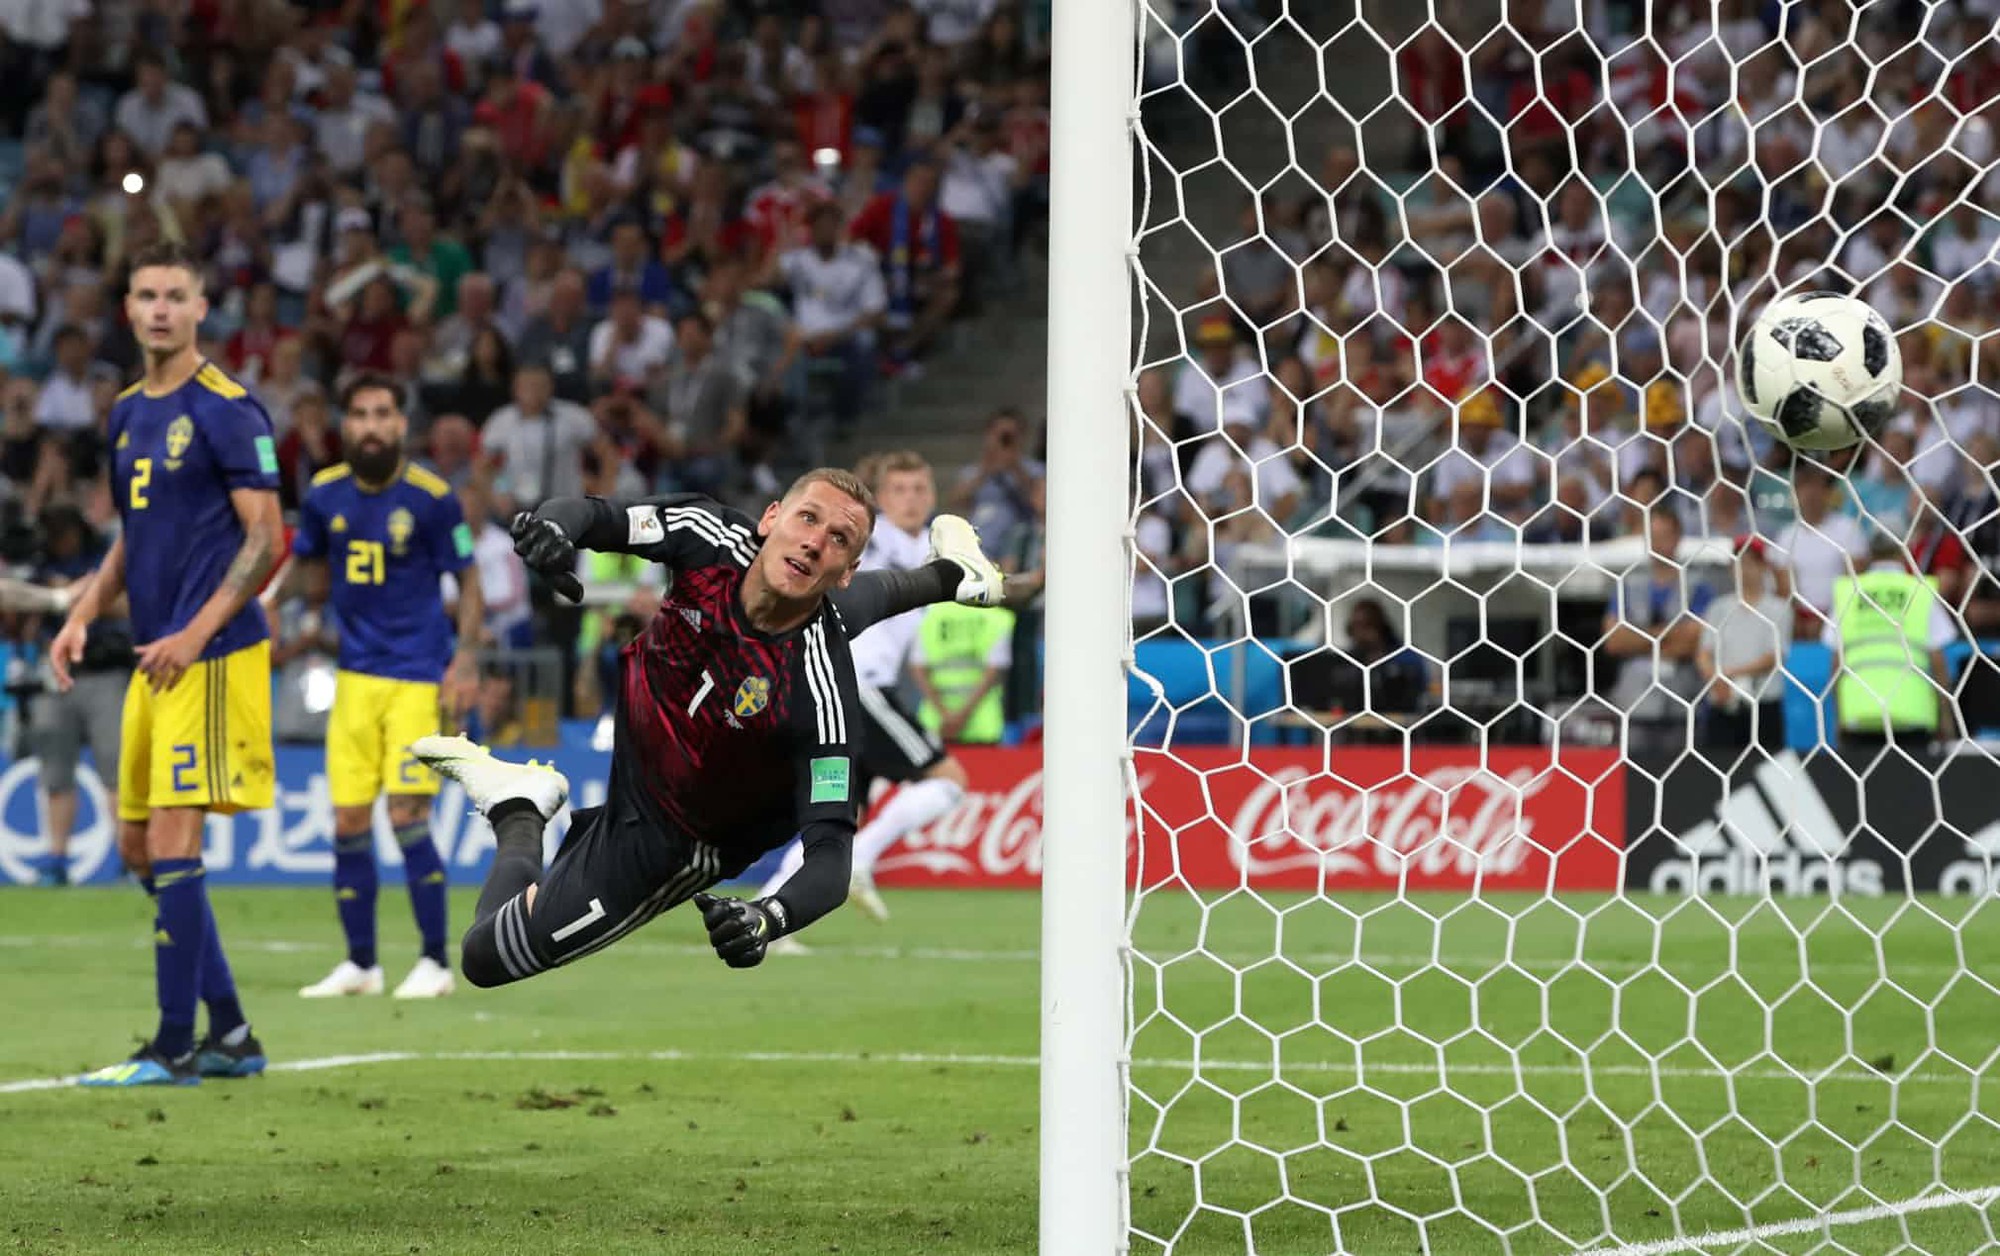 Nhìn lại những khoảnh khắc đẹp nhất World Cup 2018 - Ảnh 5.